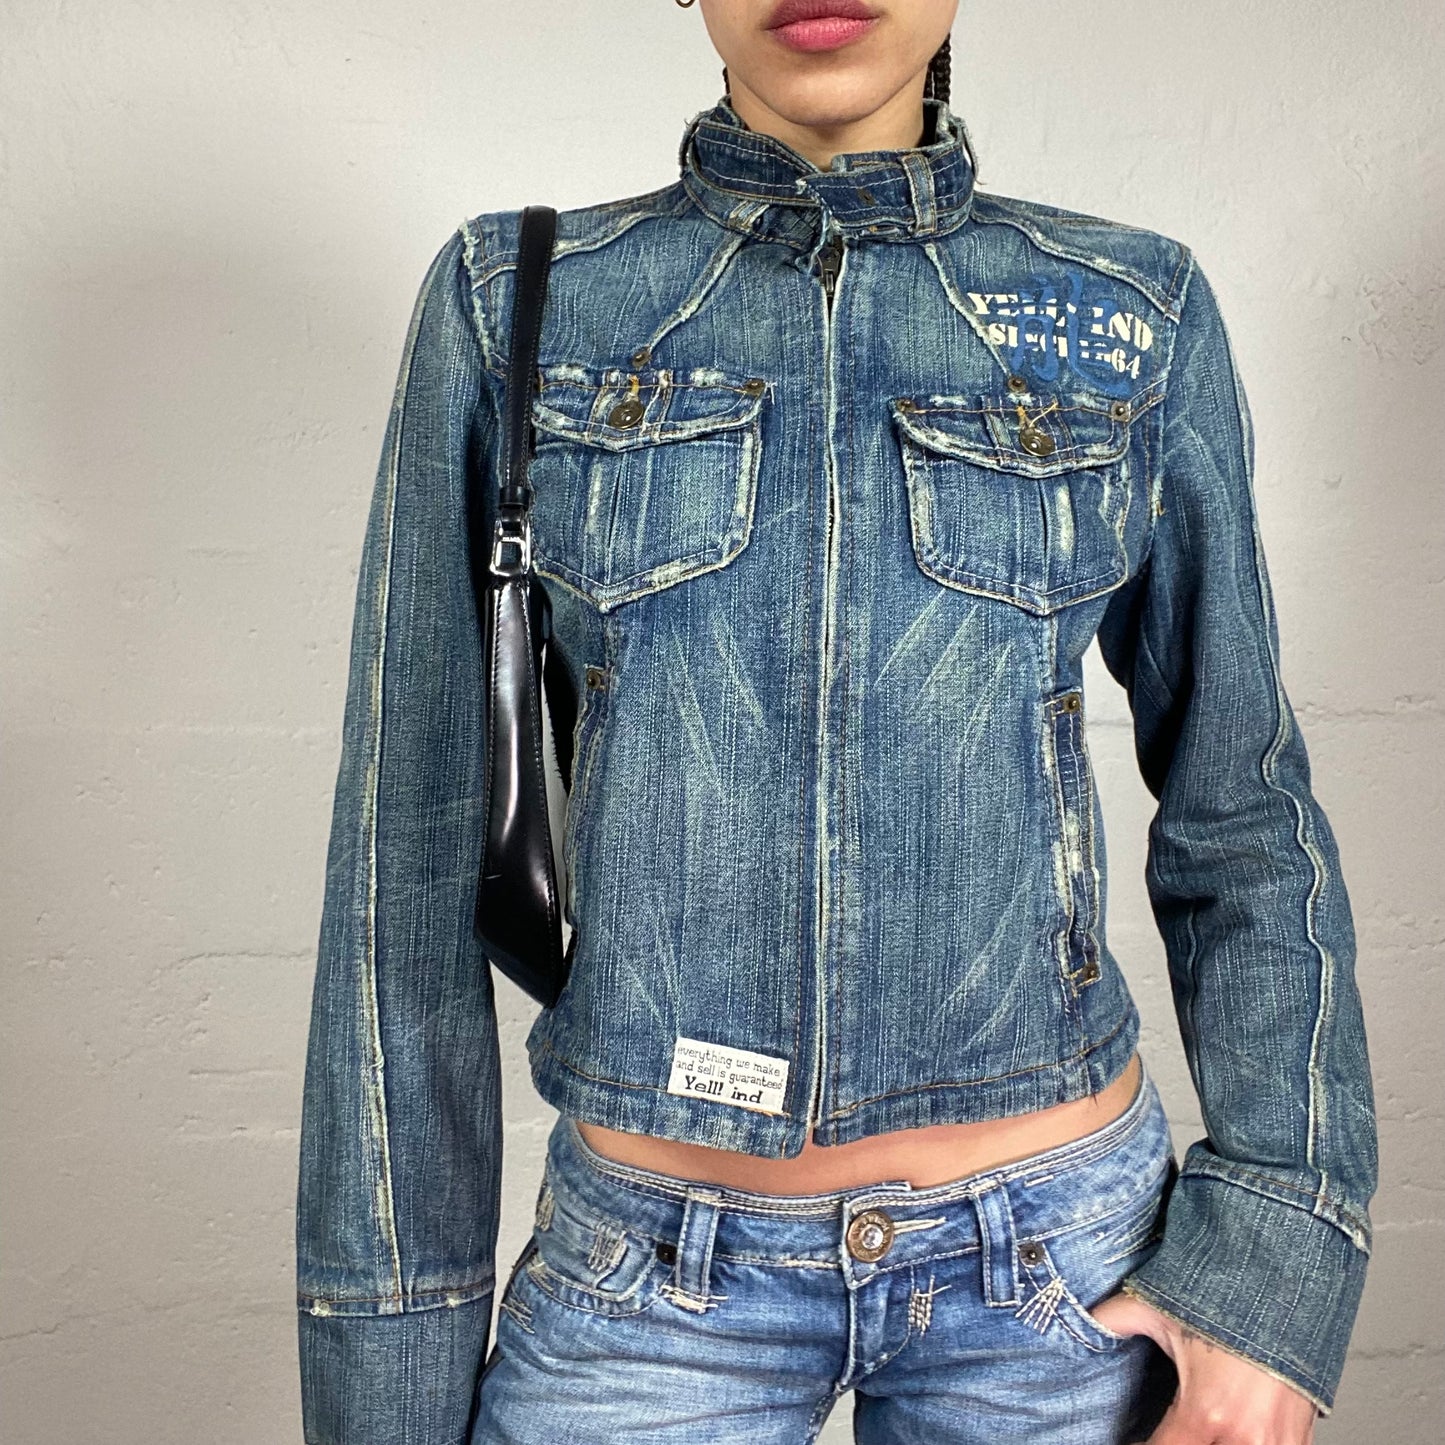 Vintage 2000’s Biker Girl Zip Up High Neck Washed Off Denim Motojacket with Neck Belt and Pocket Details (S)